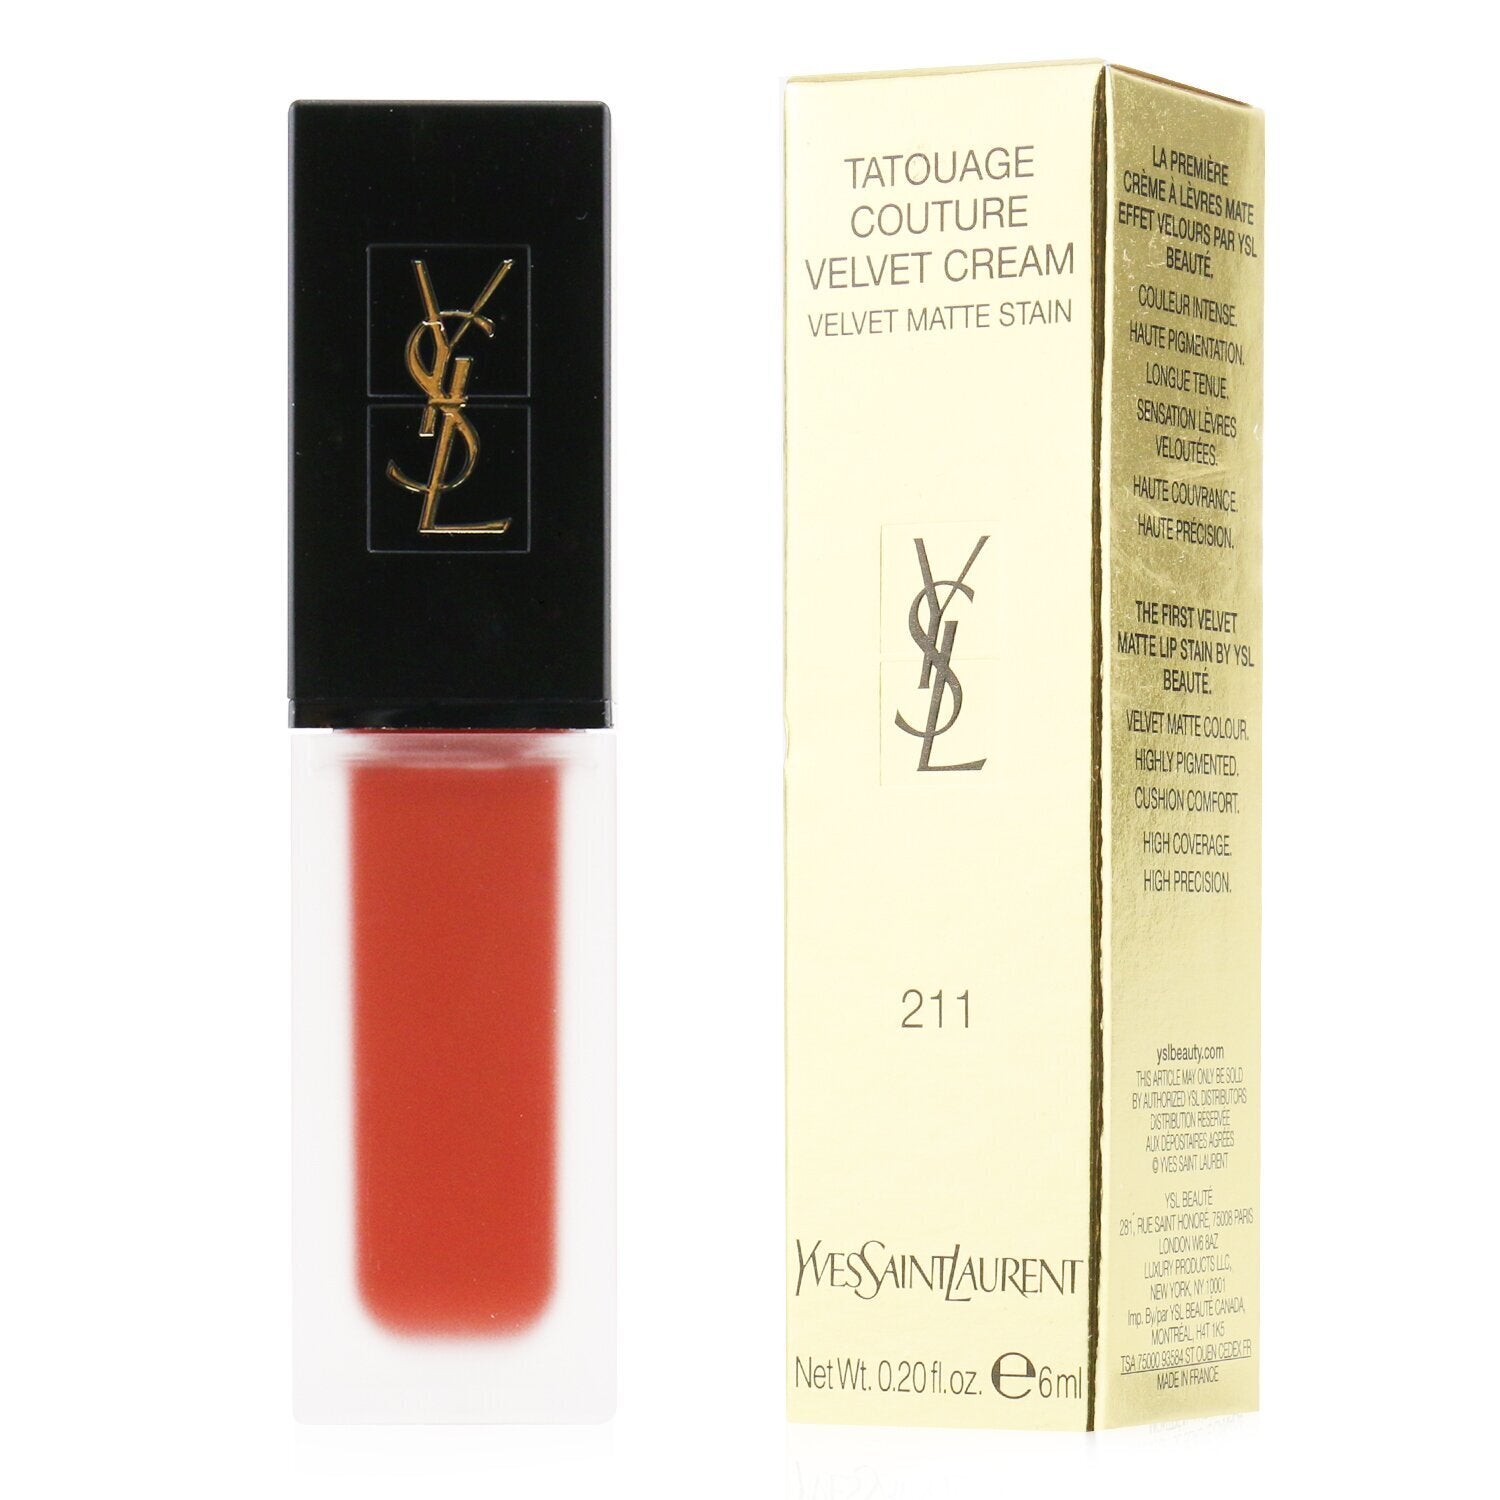 YSL Rouge Pur Couture Lipstick, Le Orange 13 - 0.13 oz tube